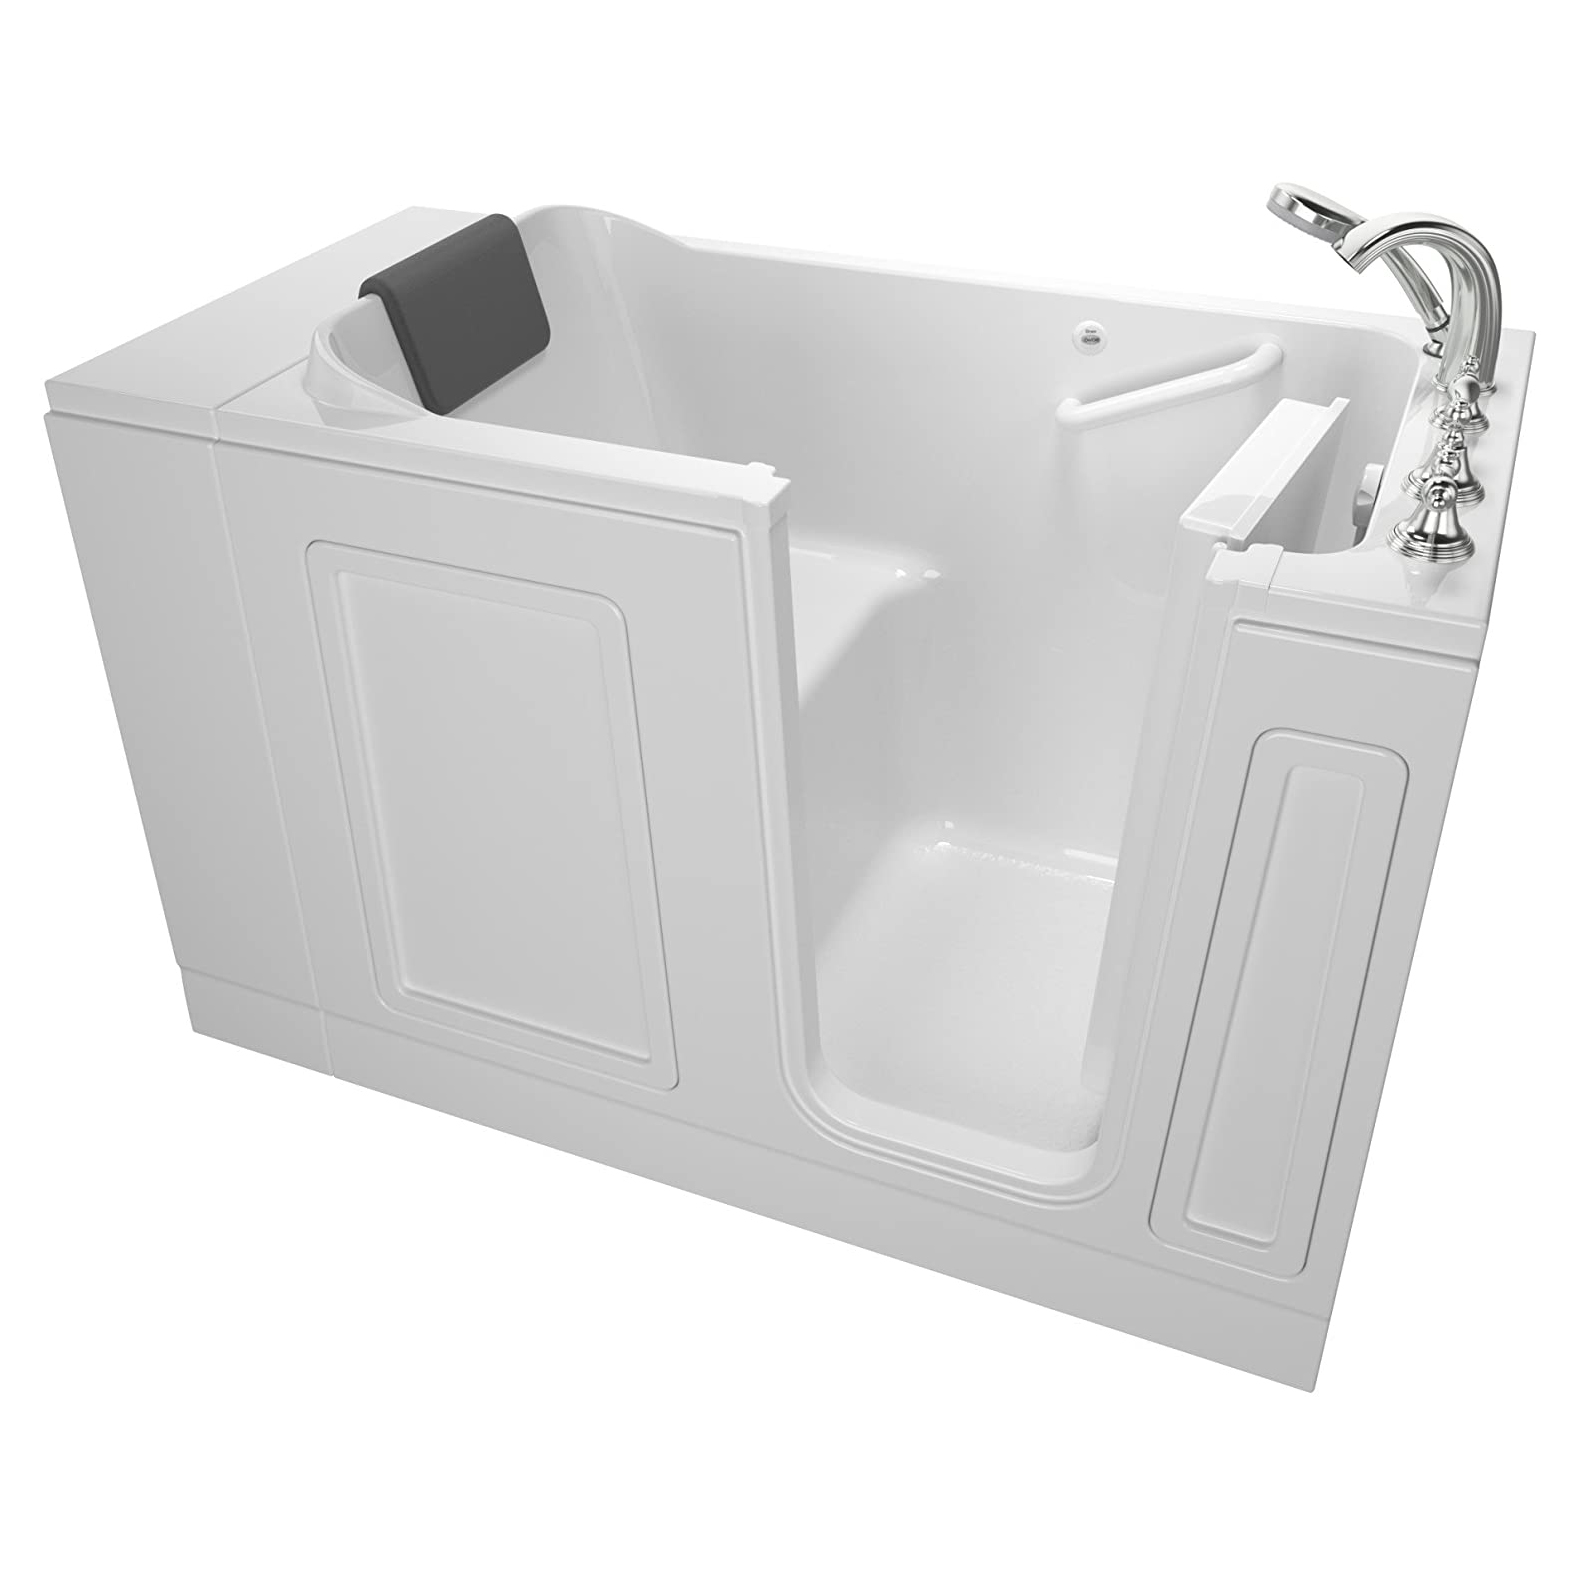 Luxury 51x30x37-1/2" Walk-In Bathtub w/Right Drain in White